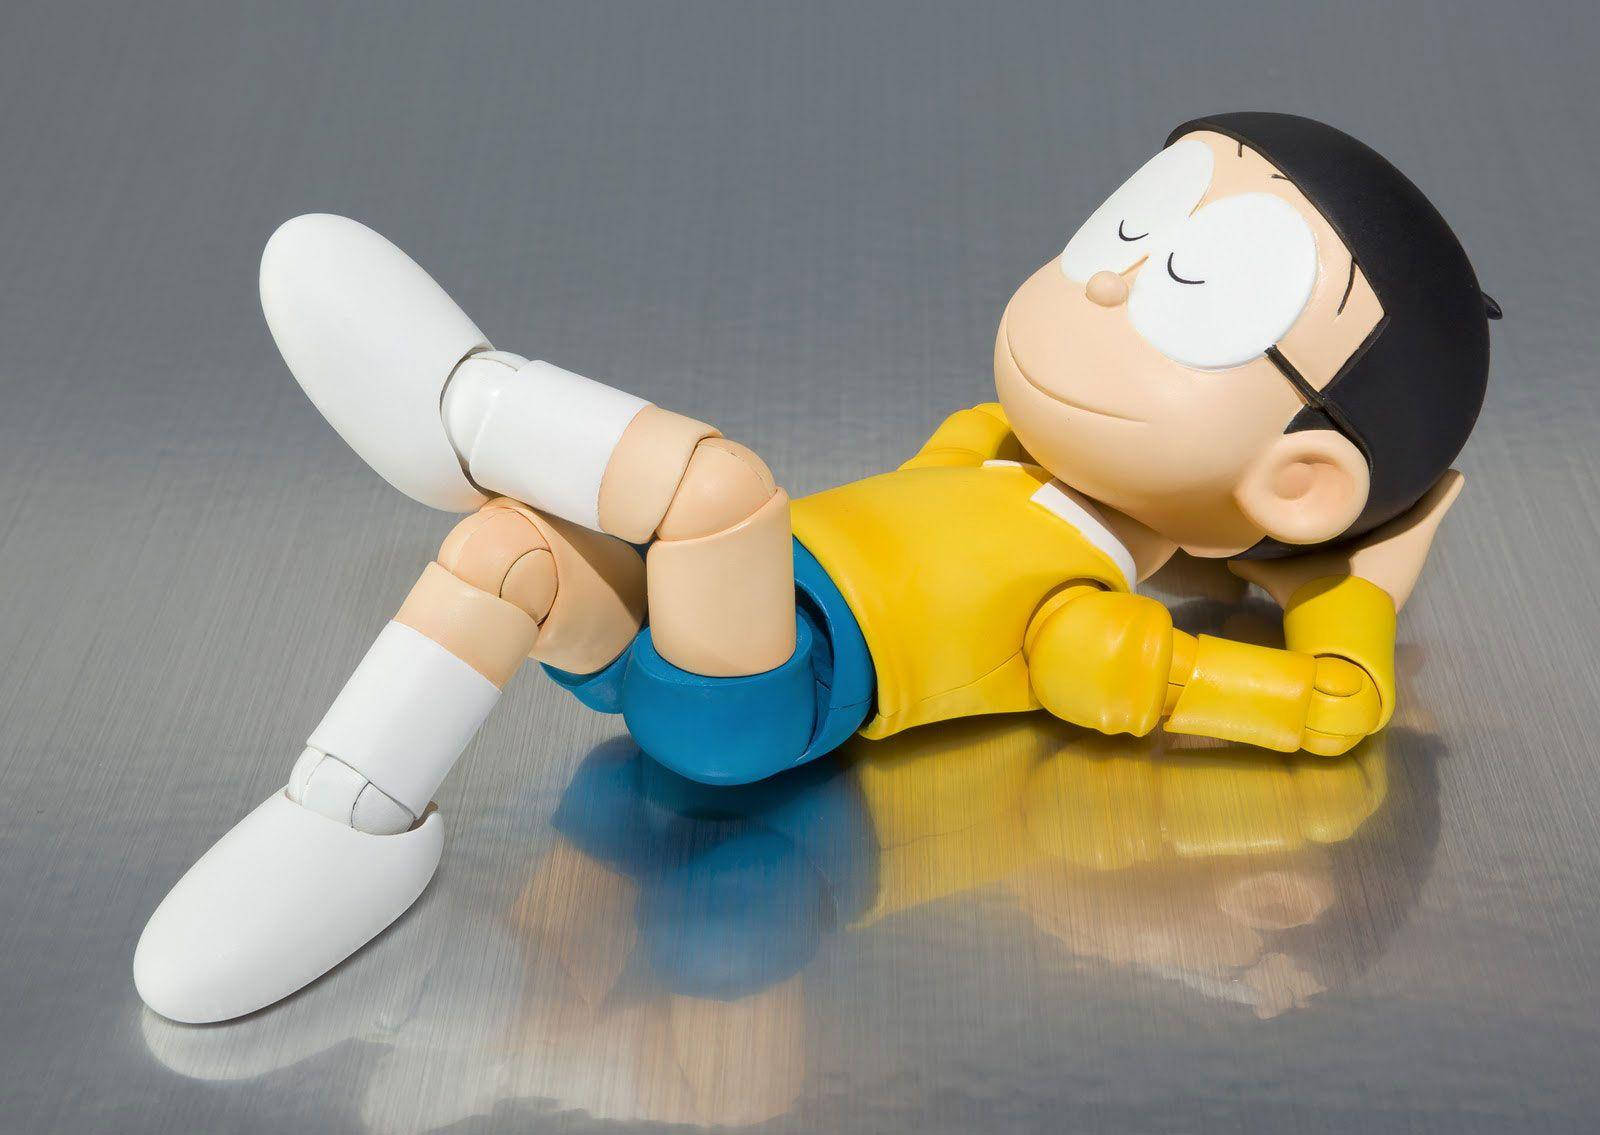 Cute Nobita Sleeping On Reflective Floor